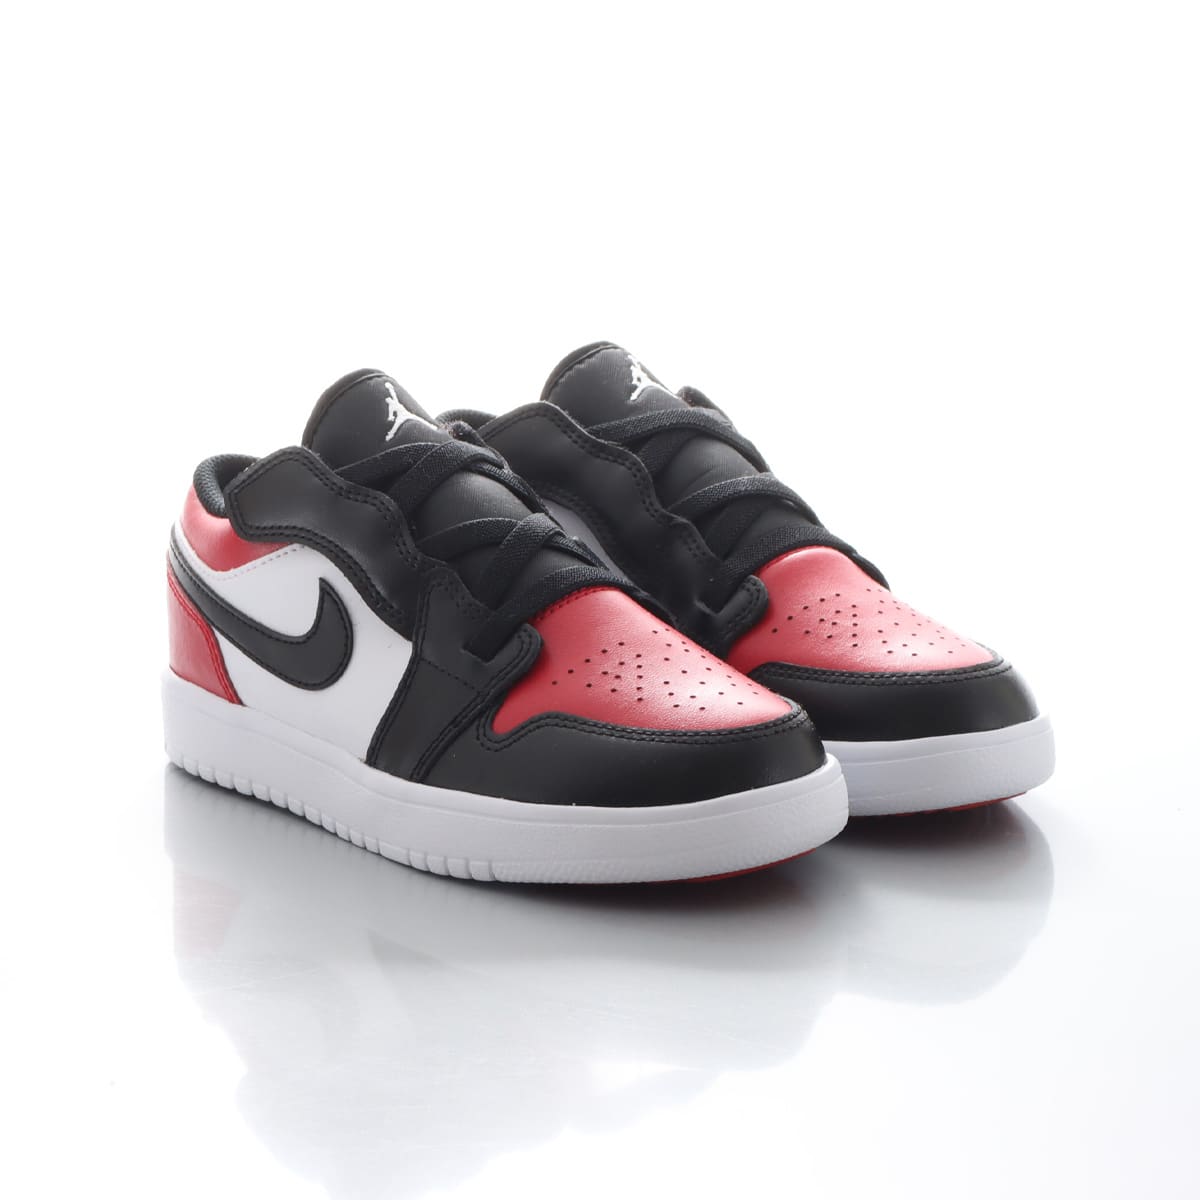 Nike Air Jordan 1 Low "Bred Toe"  27.5cm